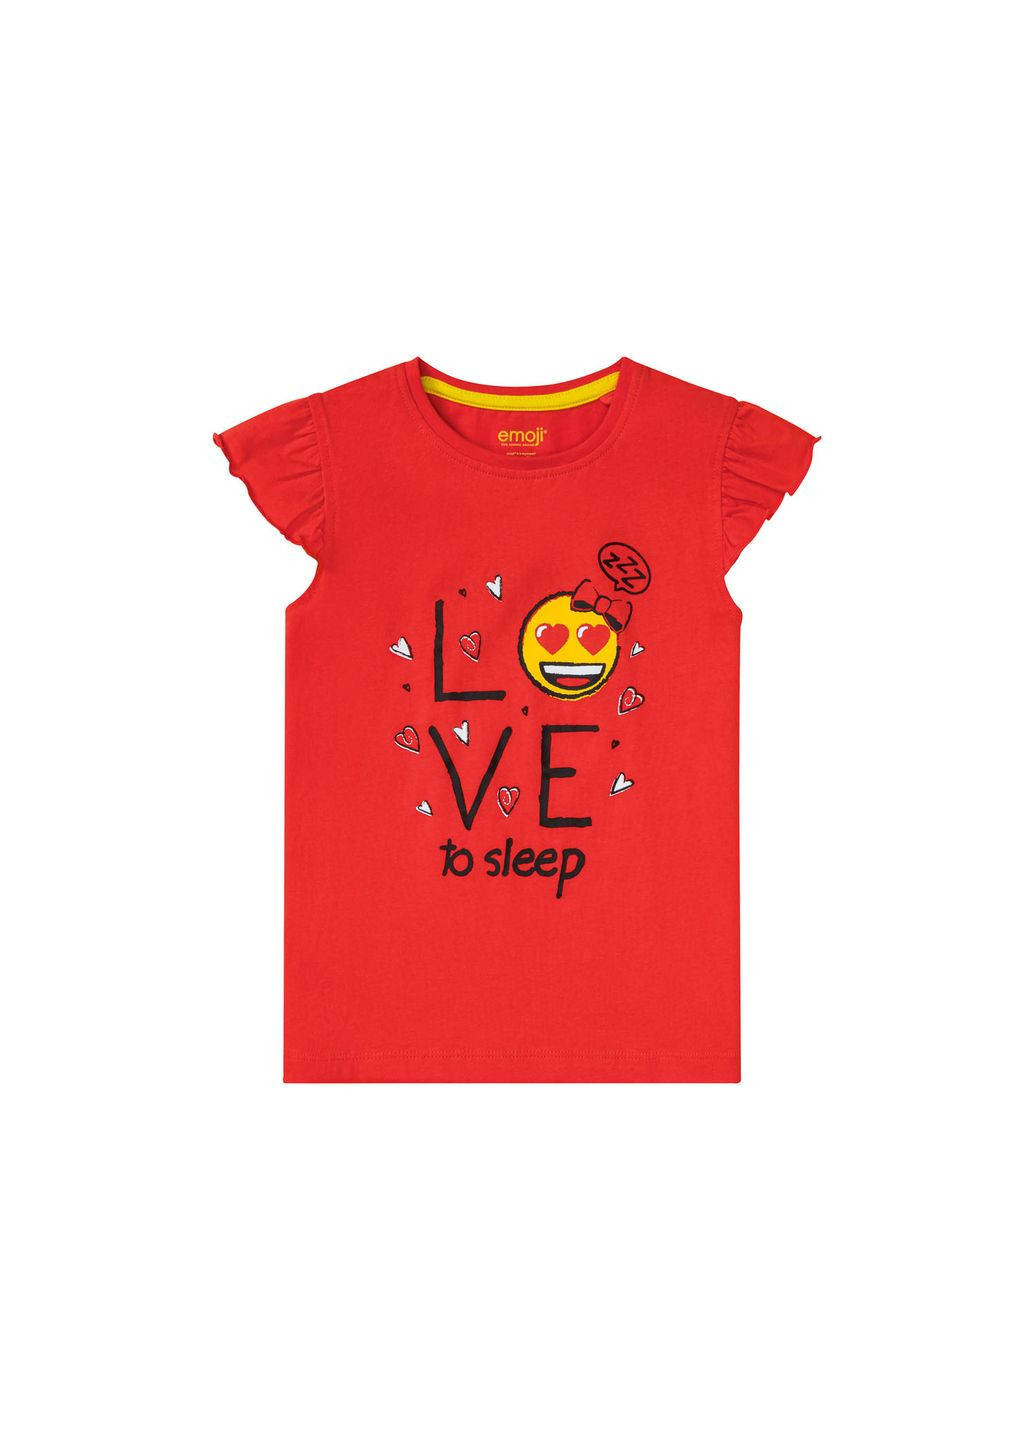 Красная пижама (футболка и шорты) для девочки емоджи 370071 Lupilu